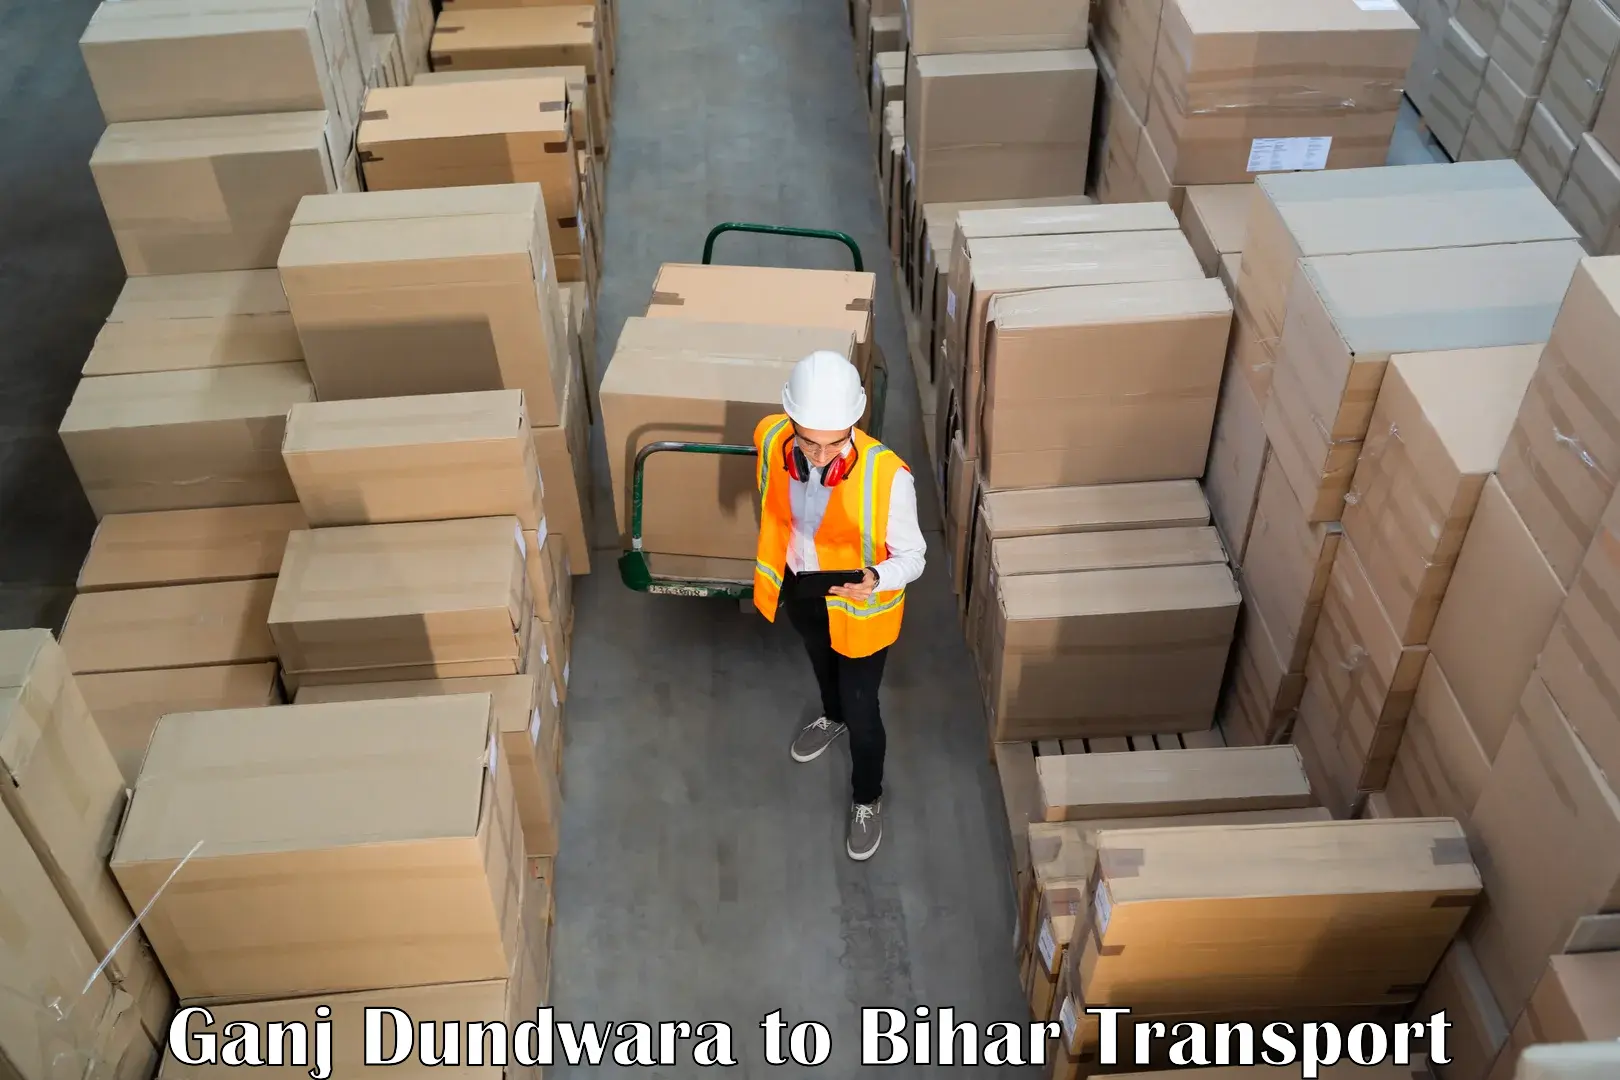 Transport services Ganj Dundwara to Bihta